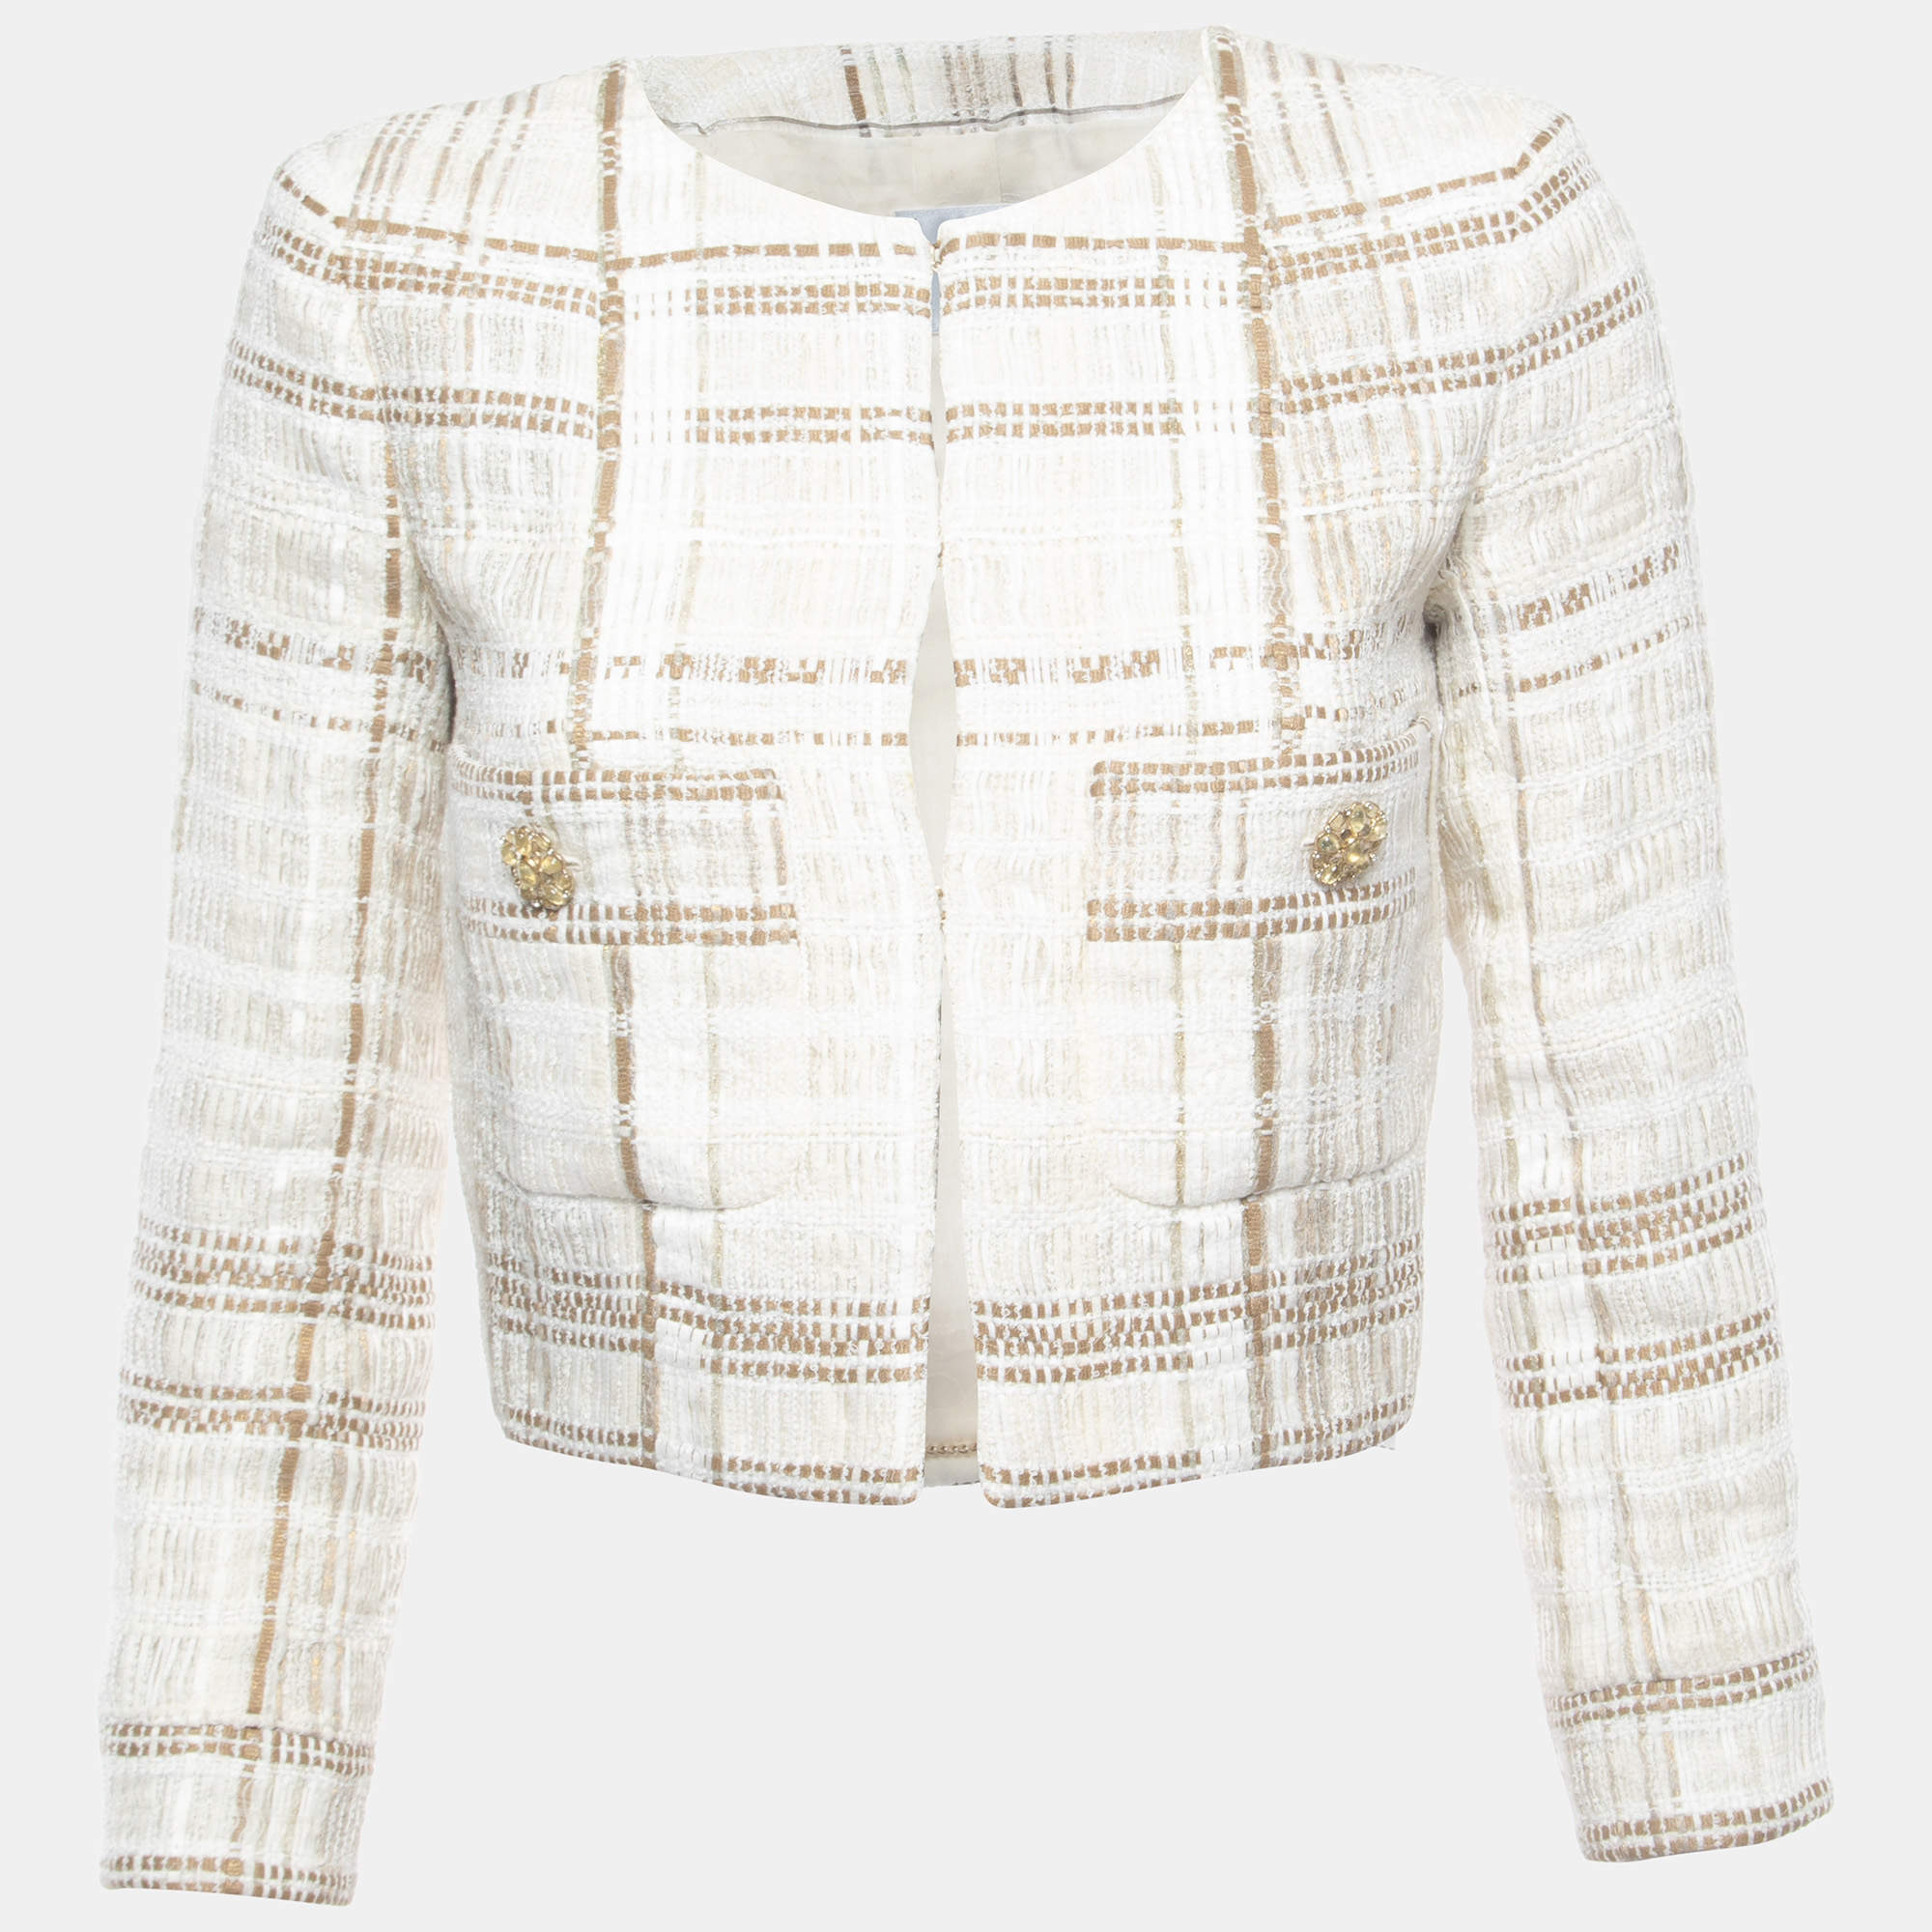 Chanel Beige/Ecru Tweed Jacket S